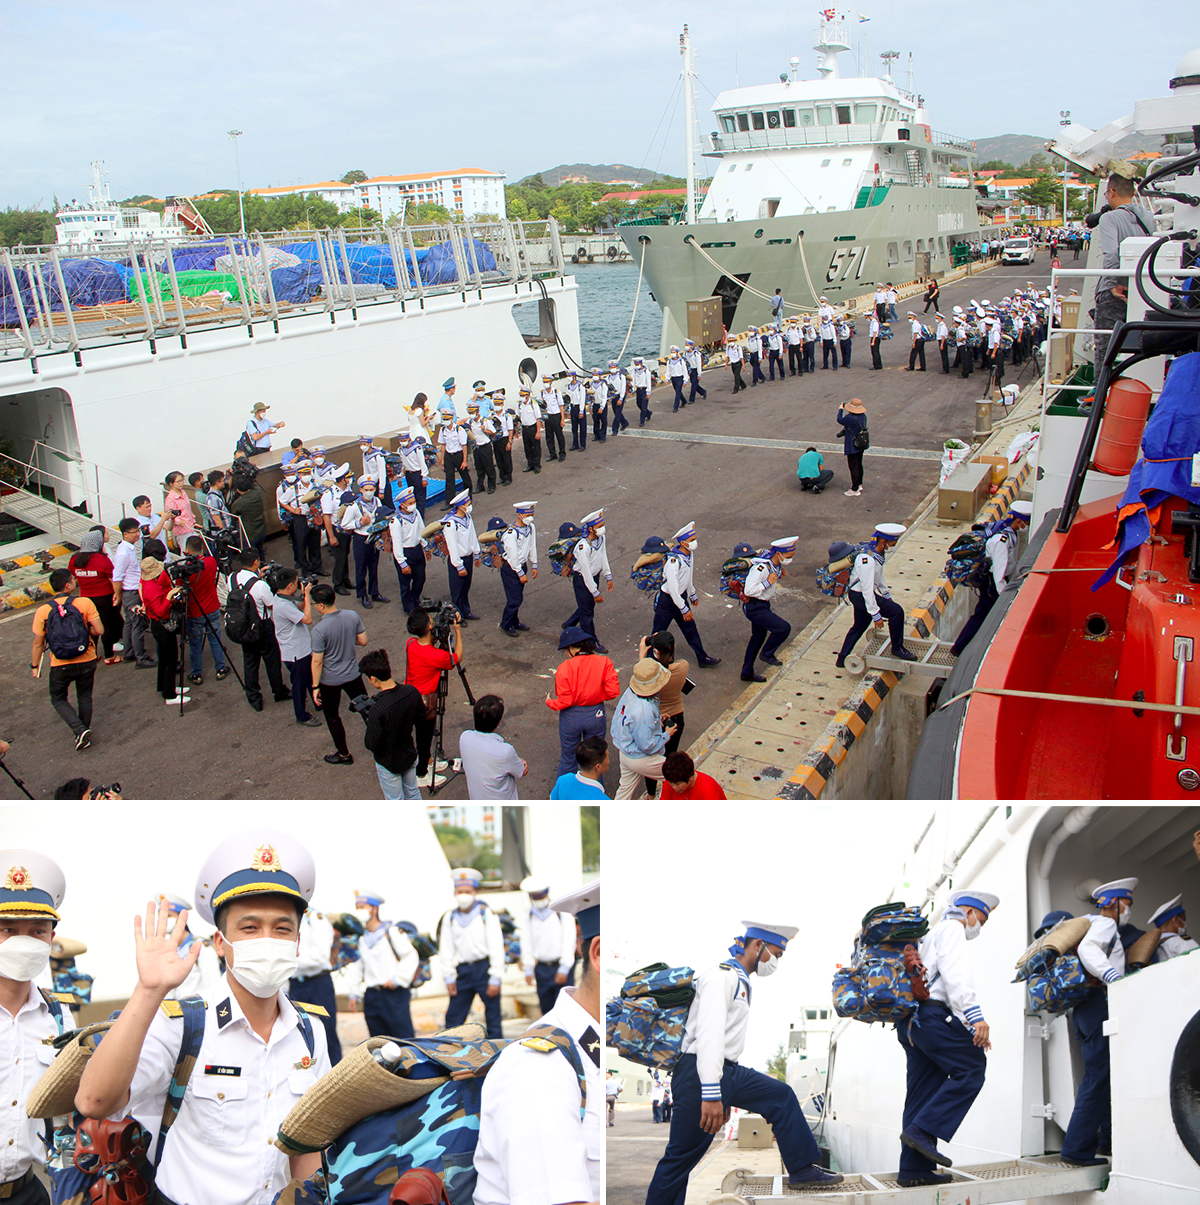 Đoàn công tác và các chiến sỹ hải quân lên đường ra Trường Sa thực hiện nhiệm vụ.